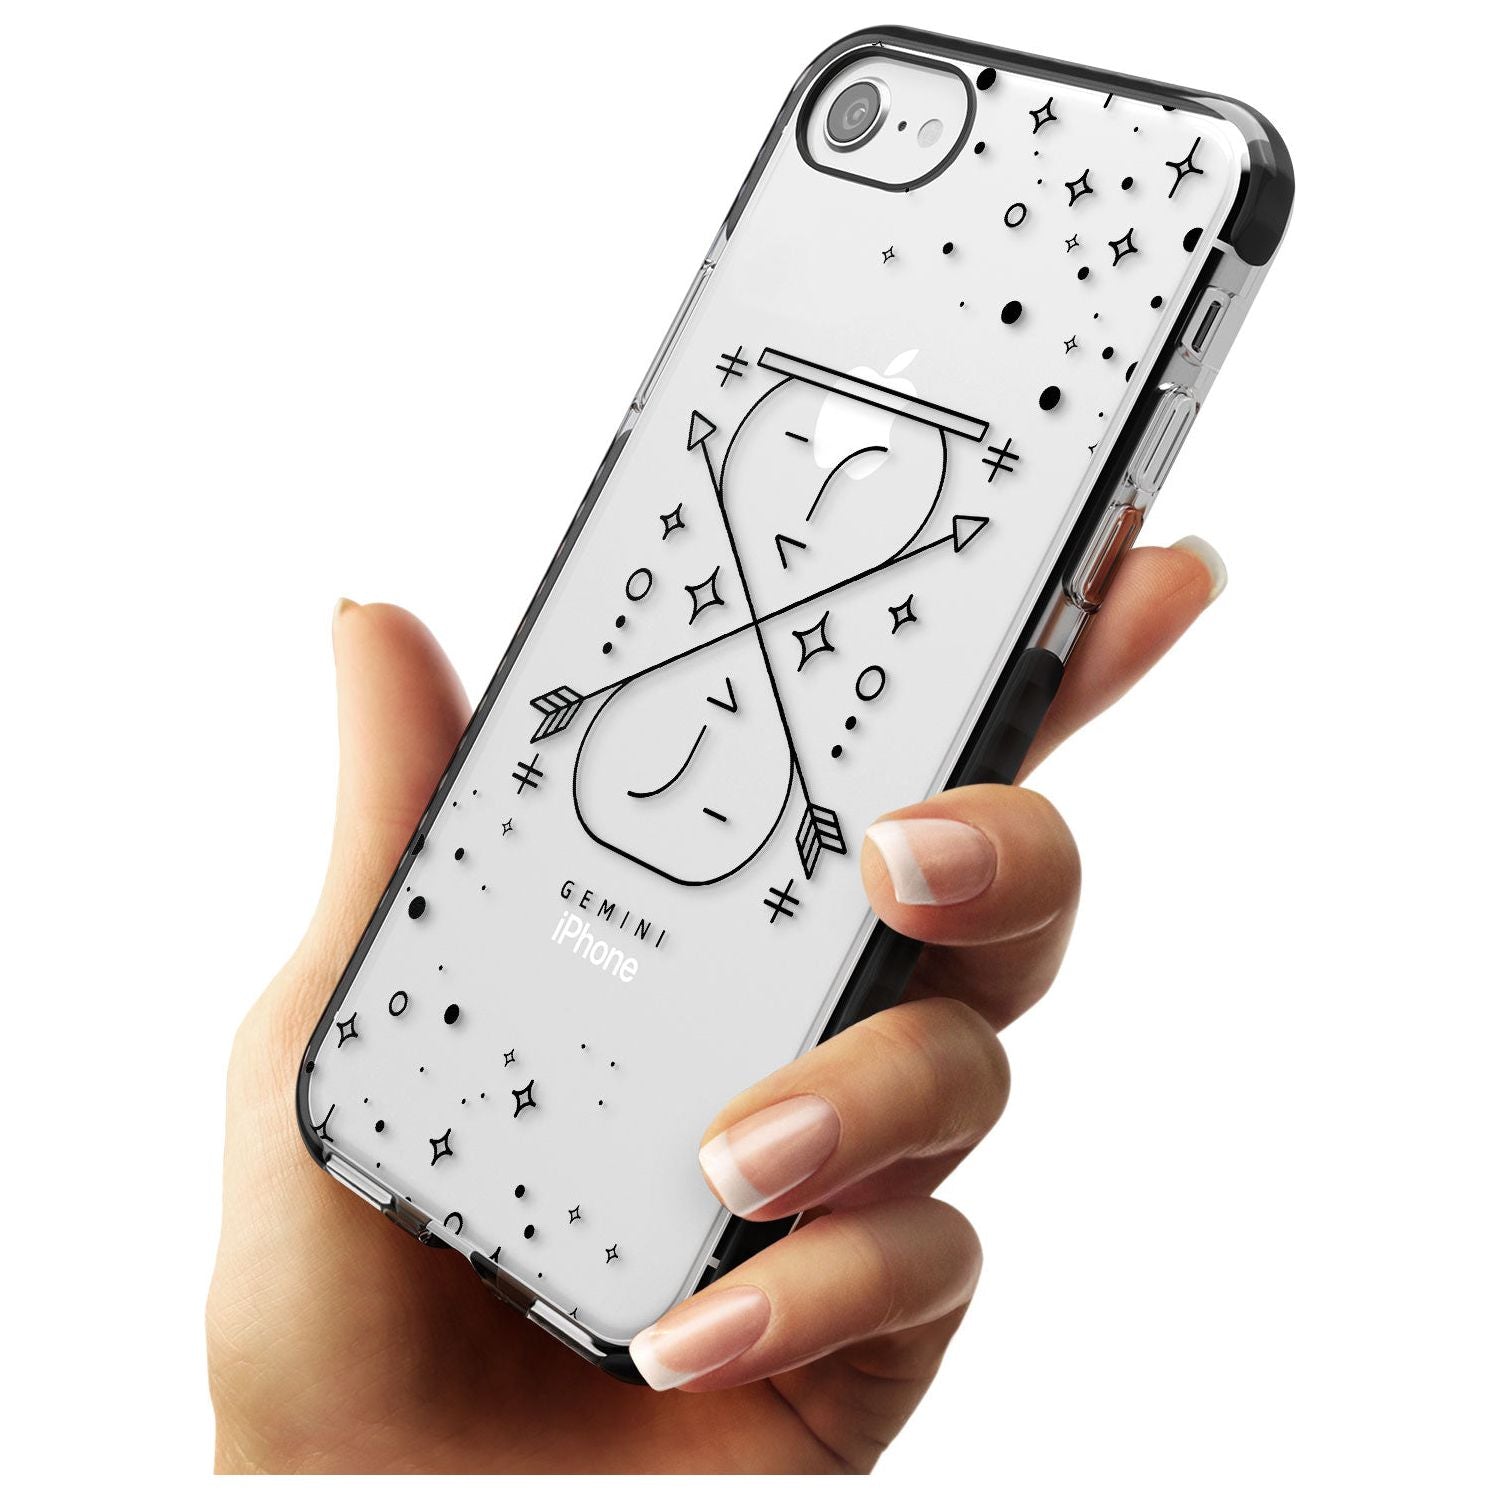 Gemini Emblem - Transparent Design Black Impact Phone Case for iPhone SE 8 7 Plus